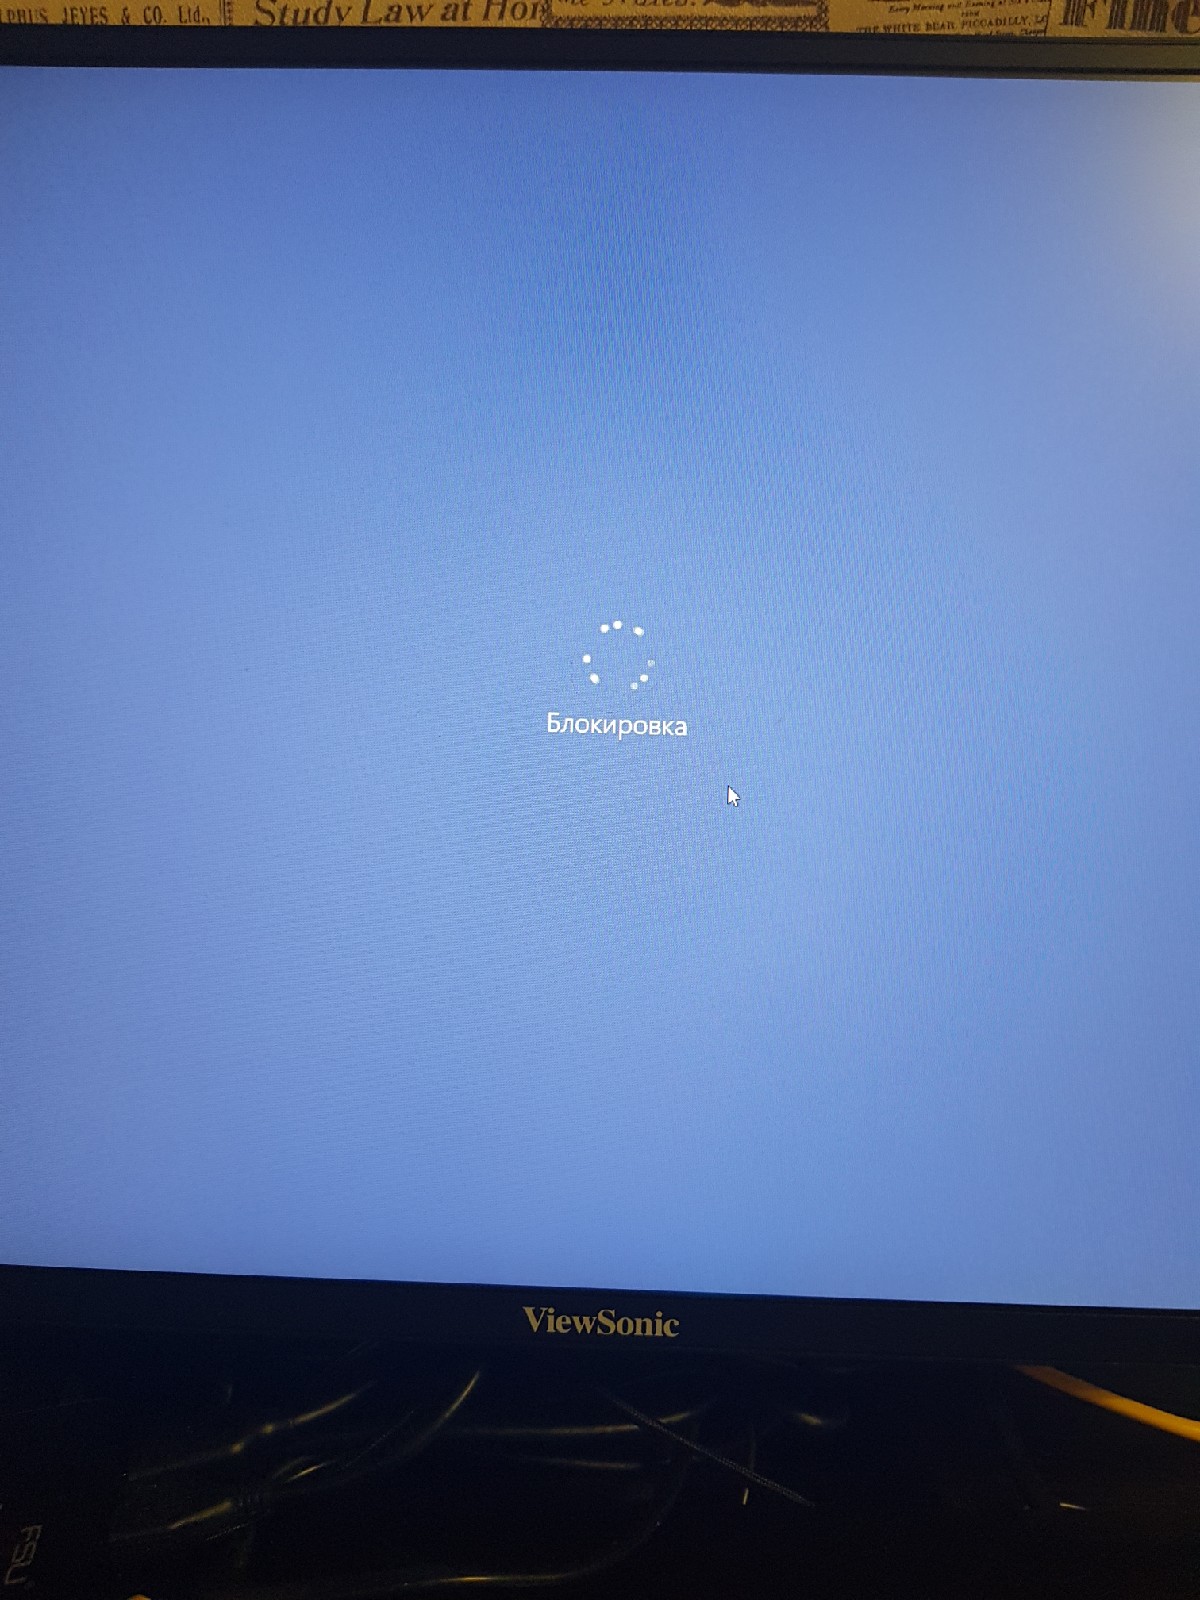 Выключился монитор ноутбука. Синий экран блокировка. Блокировка ноутбука и выключение. Синий экран блокировка на ноутбуке. Блокировка на синем экране и выключение ноутбука.